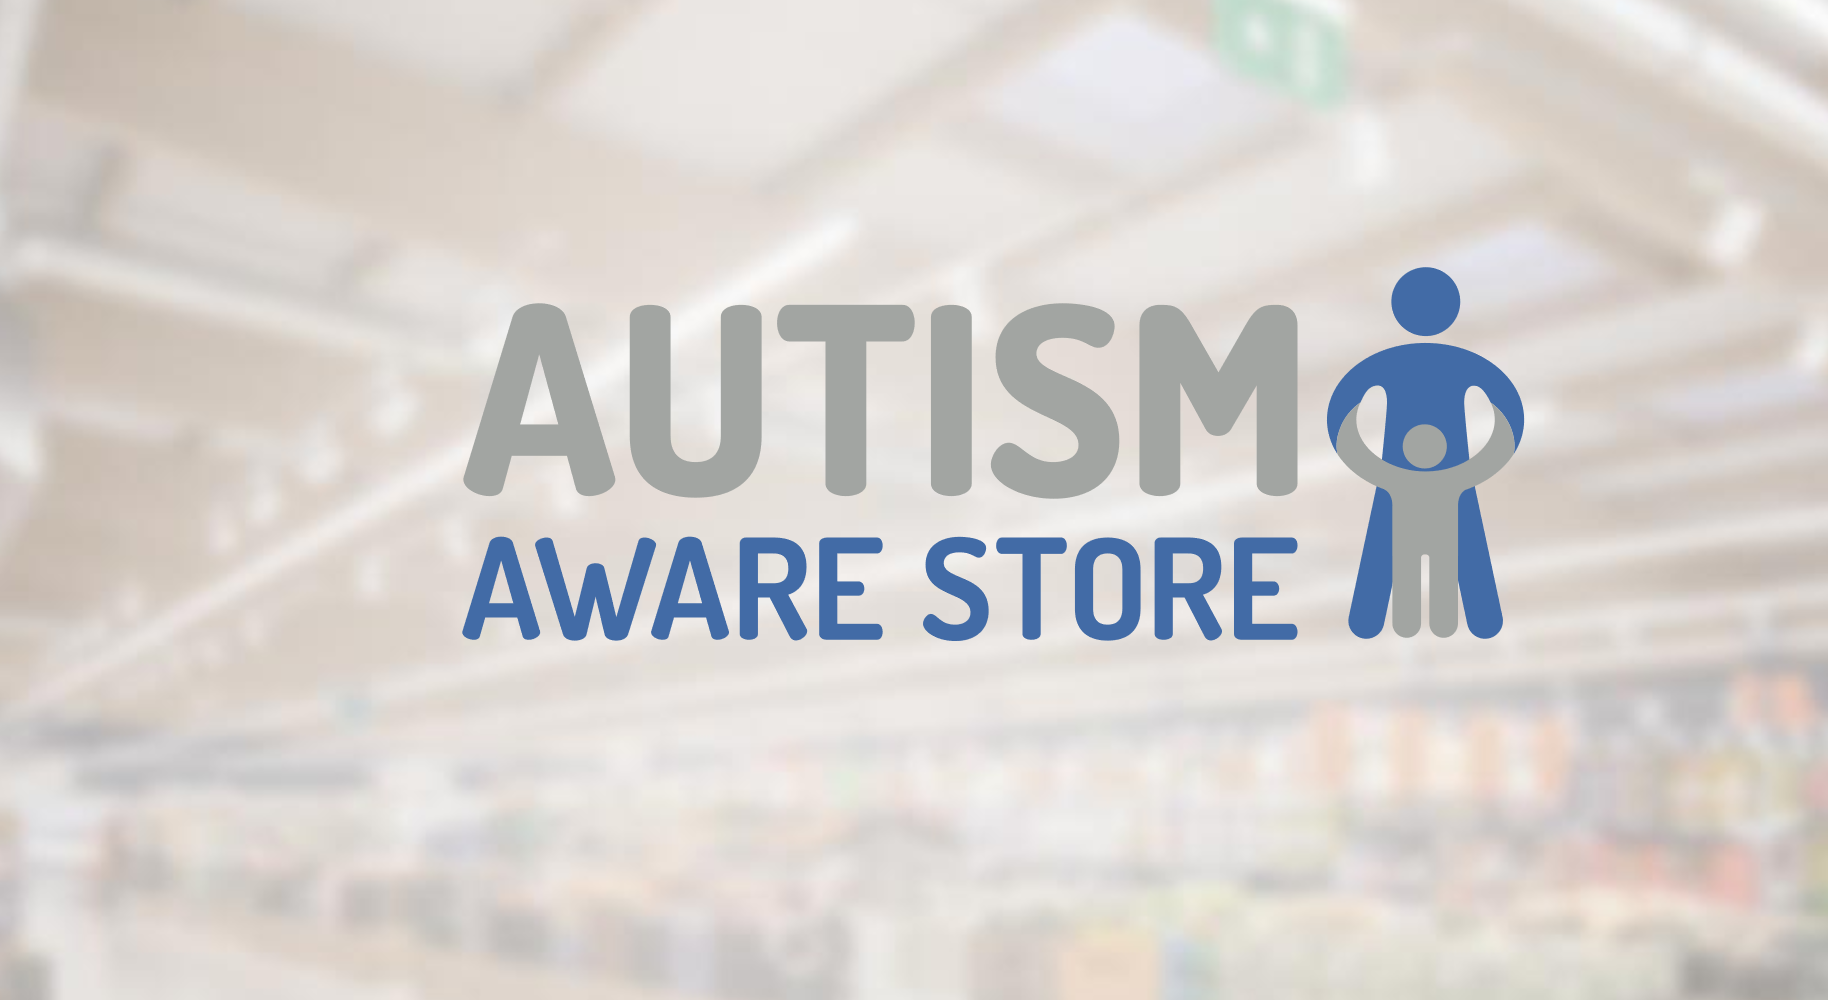 sklep przyjazny osobom z autyzmem